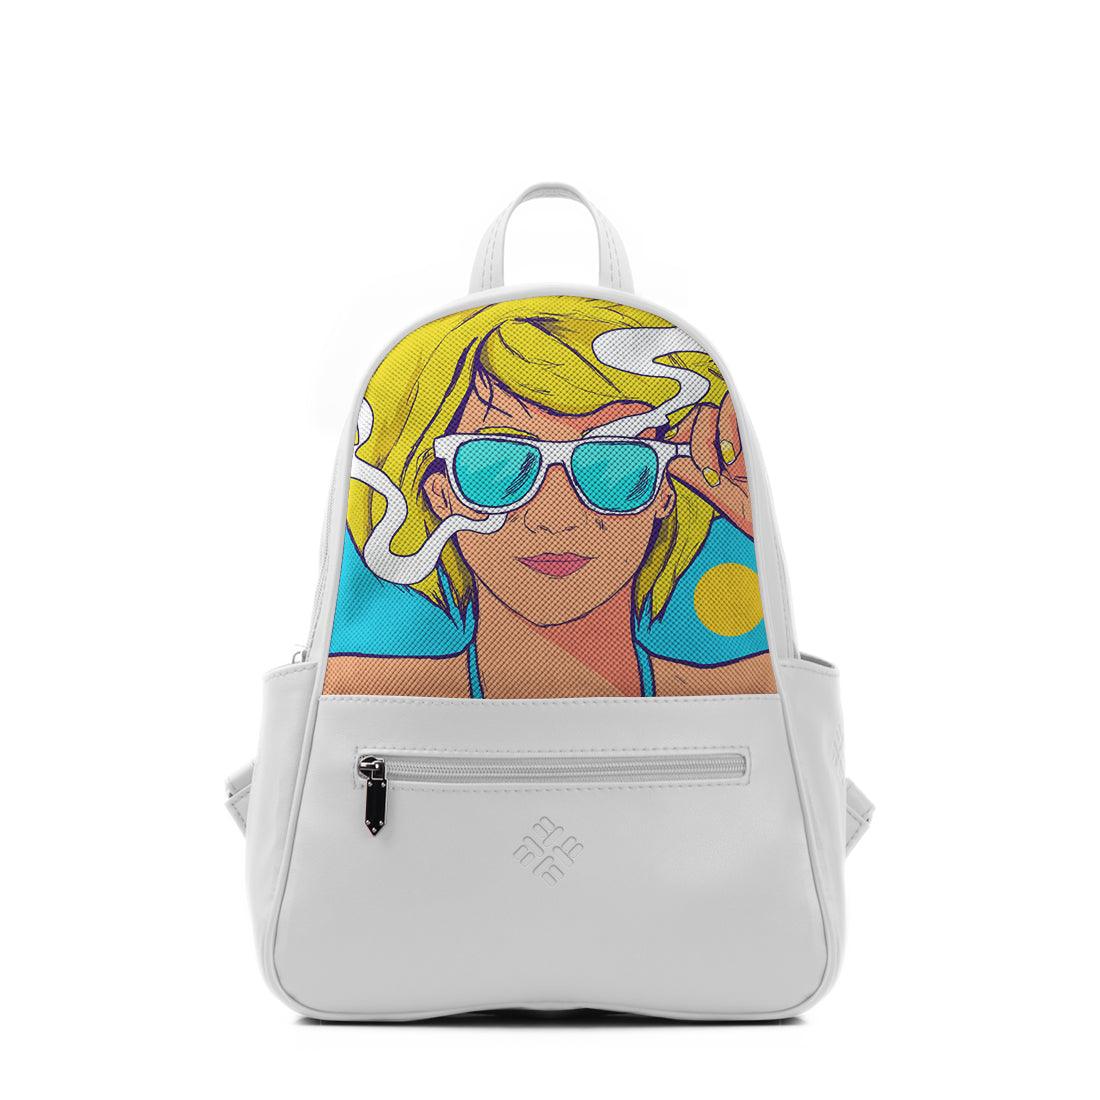 White Vivid Backpack Summer Girl - CANVAEGYPT